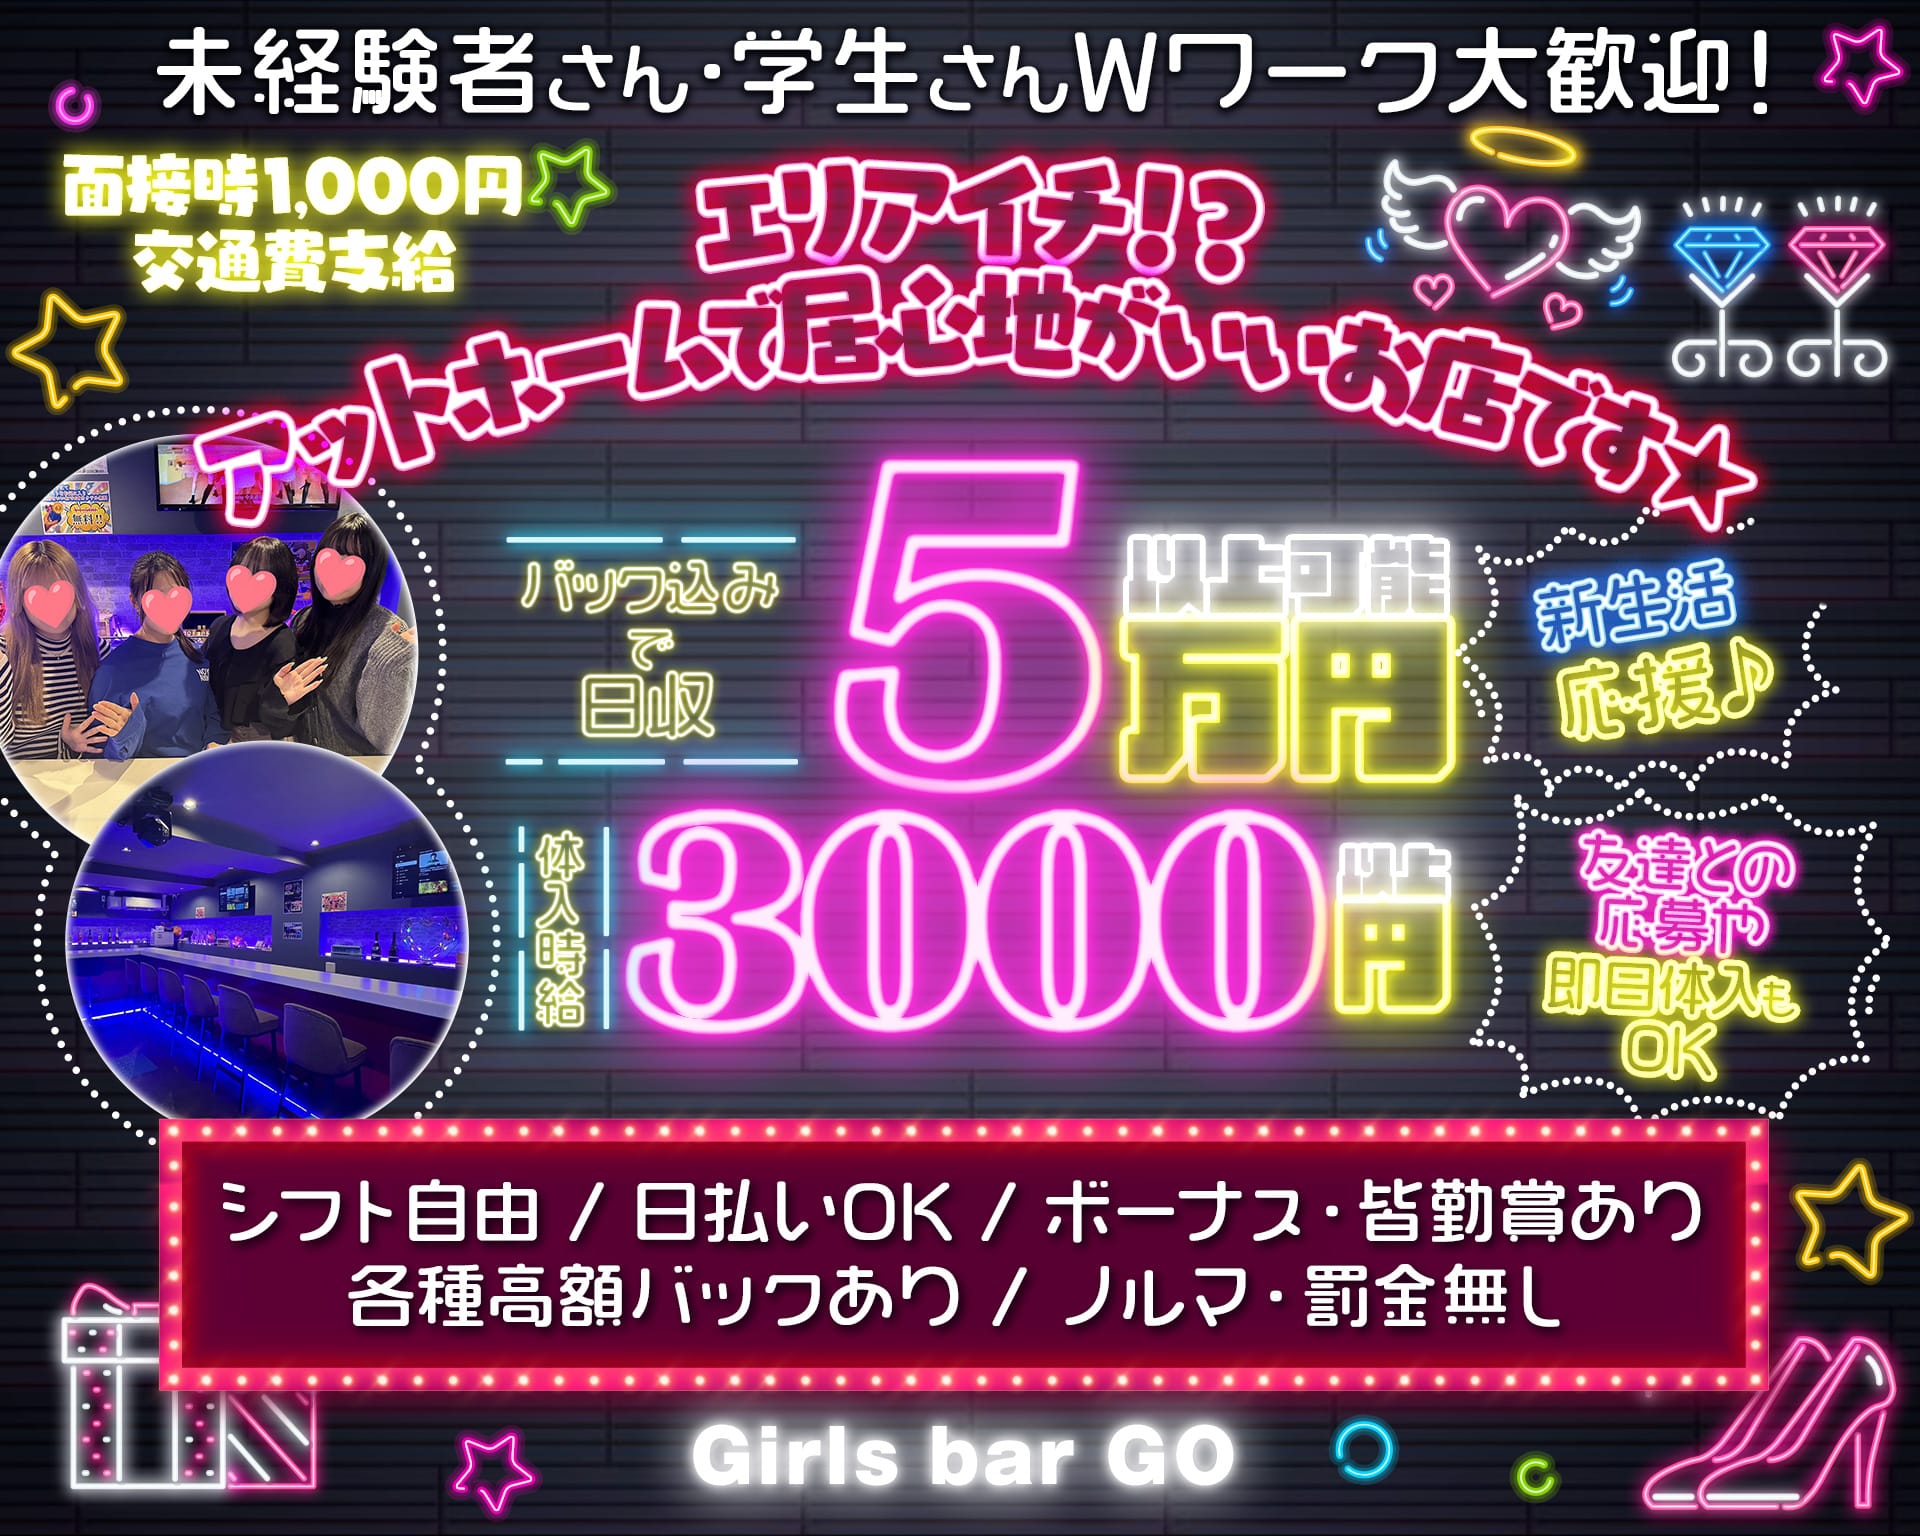 【大塚】Girls bar GO（ゴー）【公式体入・求人情報】 池袋ガールズバー TOP画像